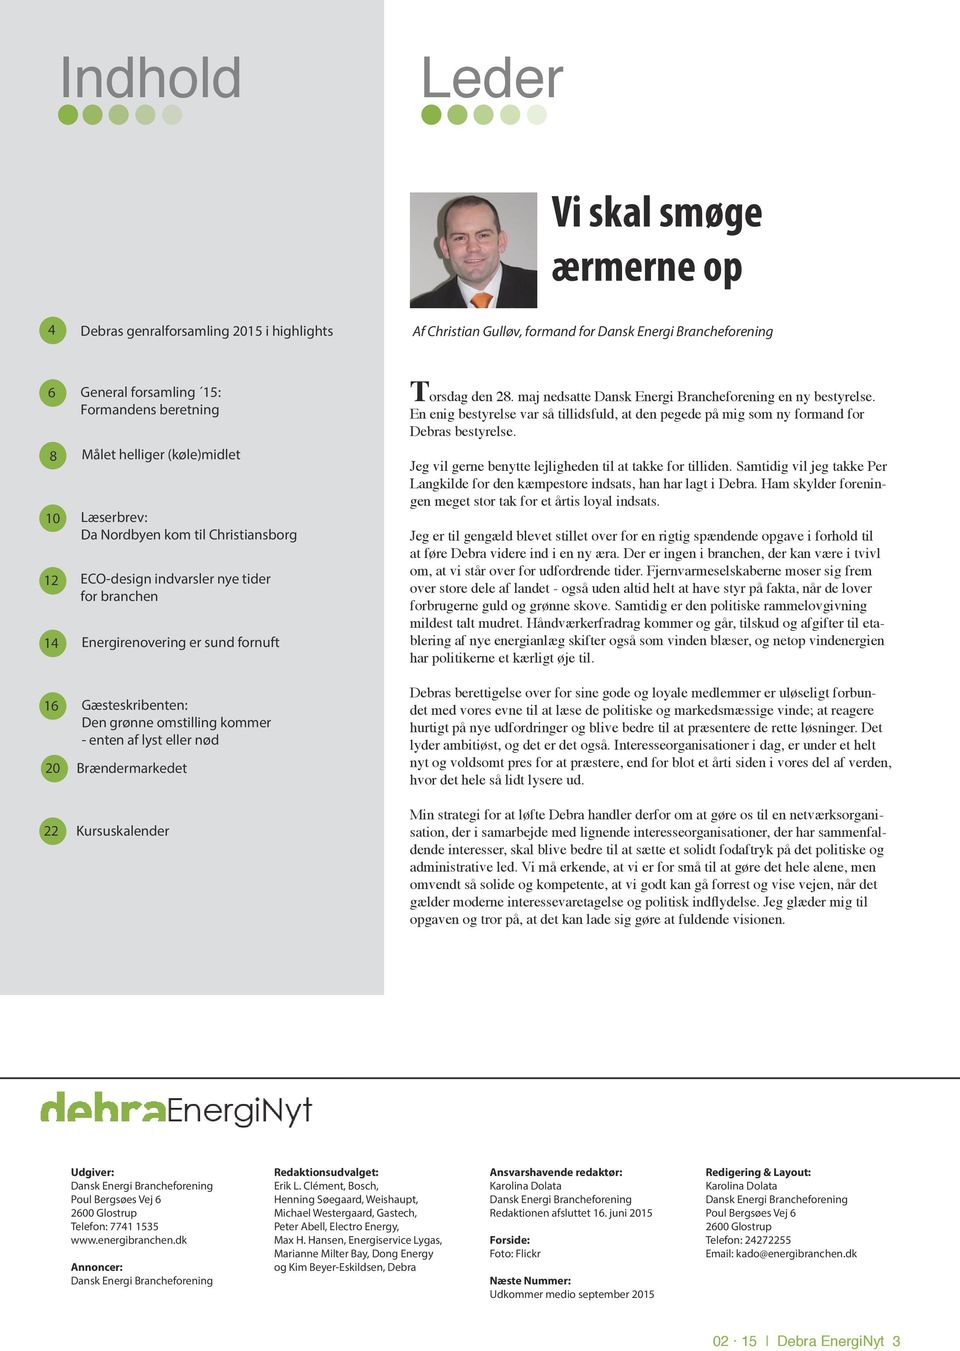 grønne omstilling kommer - enten af lyst eller nød Brændermarkedet Kursuskalender Torsdag den 28. maj nedsatte Dansk Energi Brancheforening en ny bestyrelse.